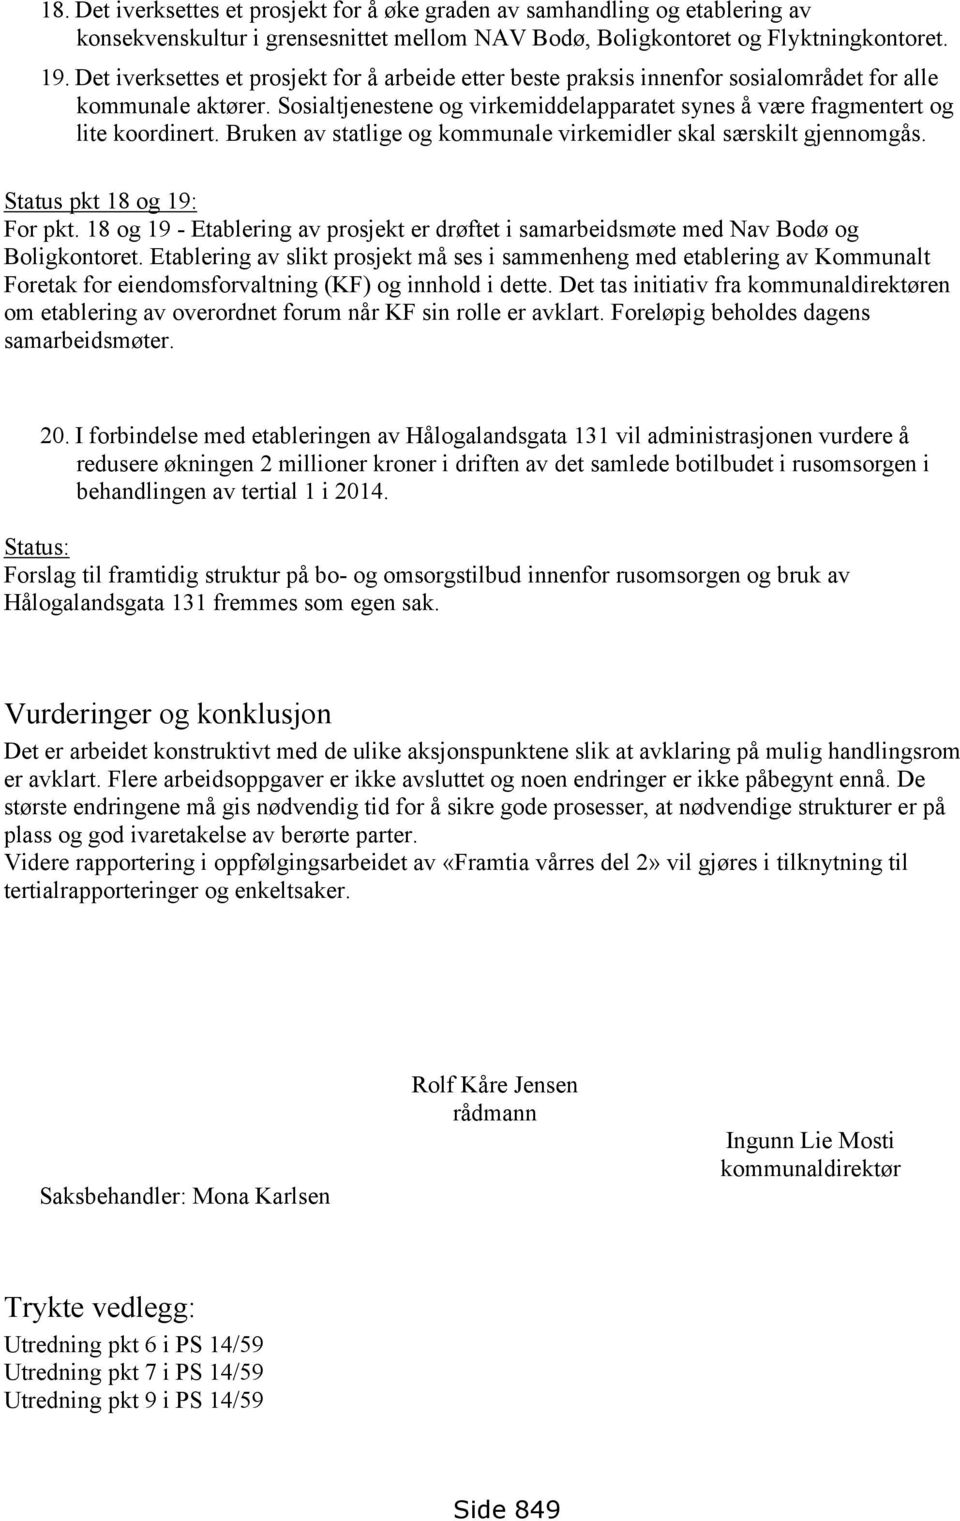 Bruken av statlige og kommunale virkemidler skal særskilt gjennomgås. Status pkt 18 og 19: For pkt. 18 og 19 - Etablering av prosjekt er drøftet i samarbeidsmøte med Nav Bodø og Boligkontoret.